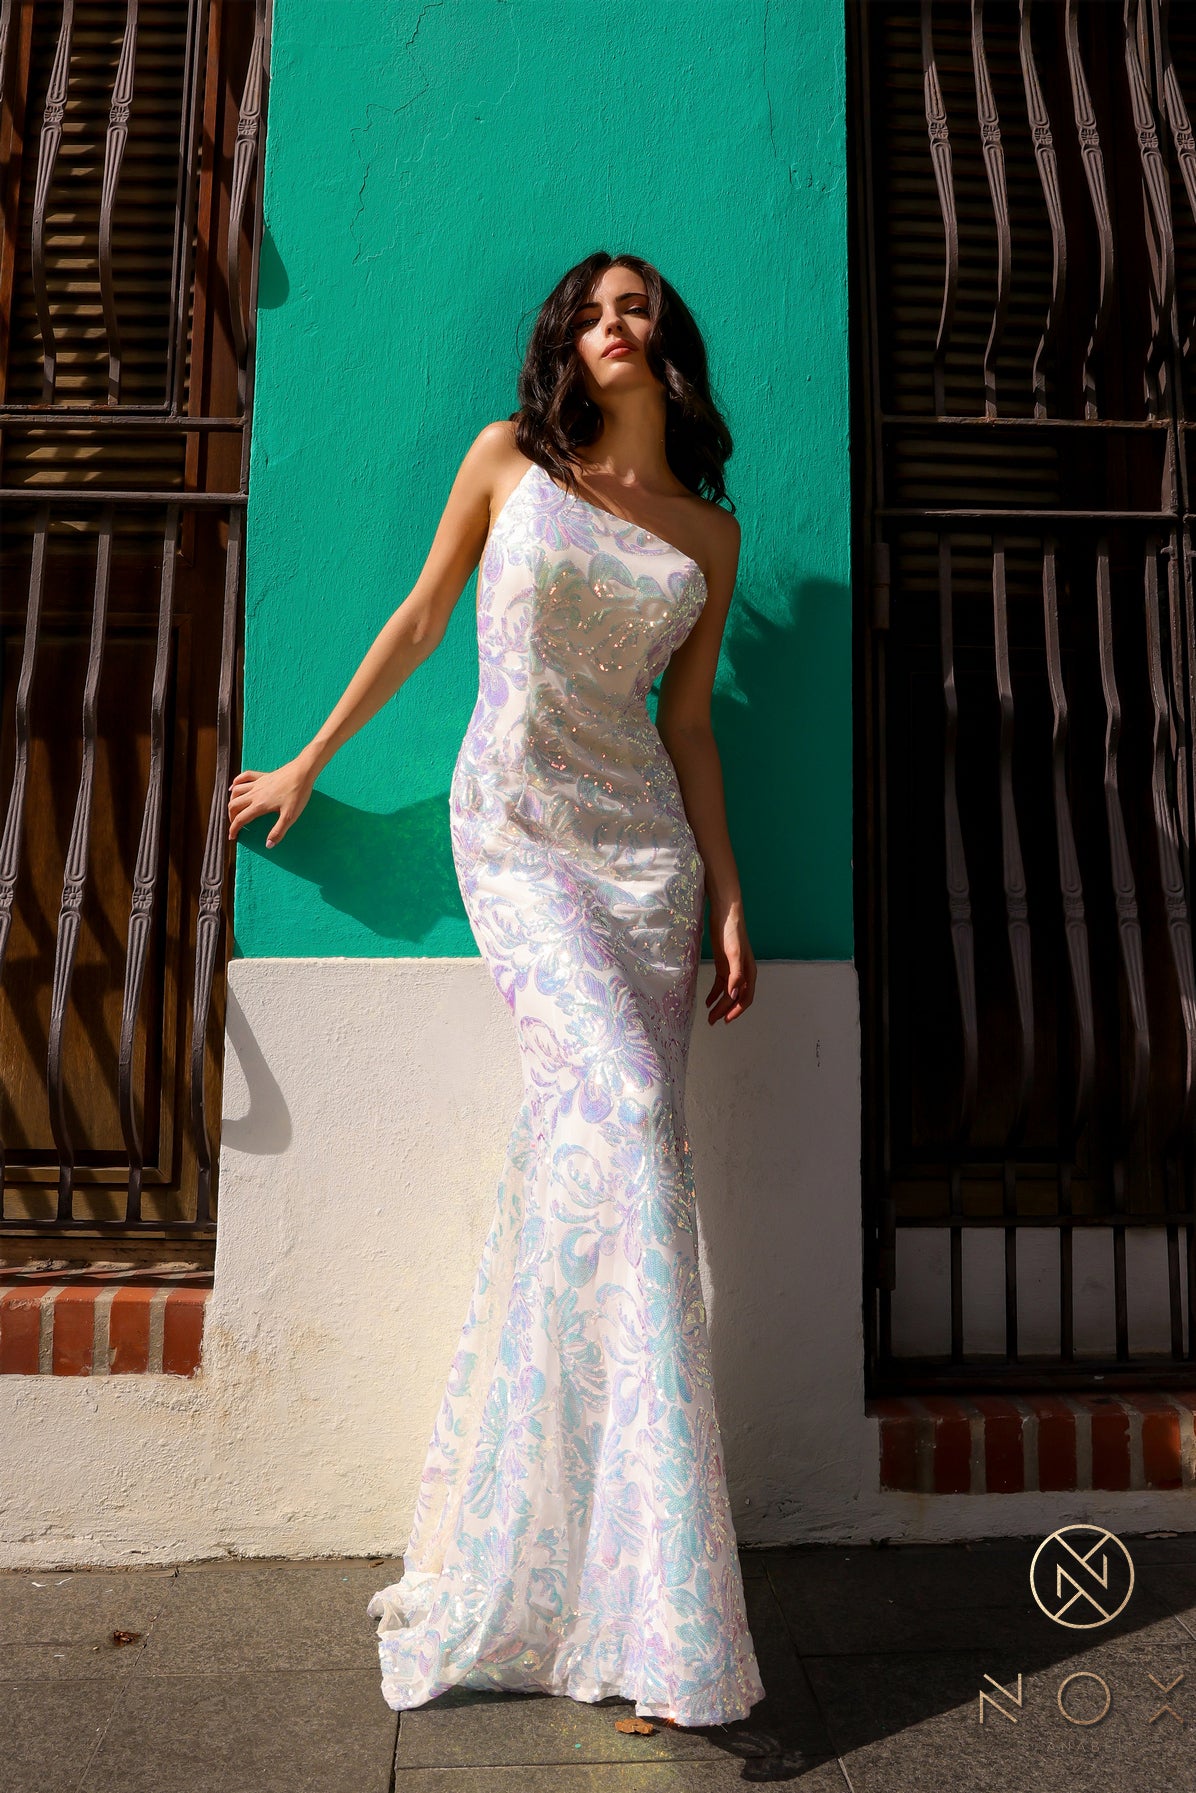 Nox Anabel –R1308 One Shoulder Floral Sequin Dress